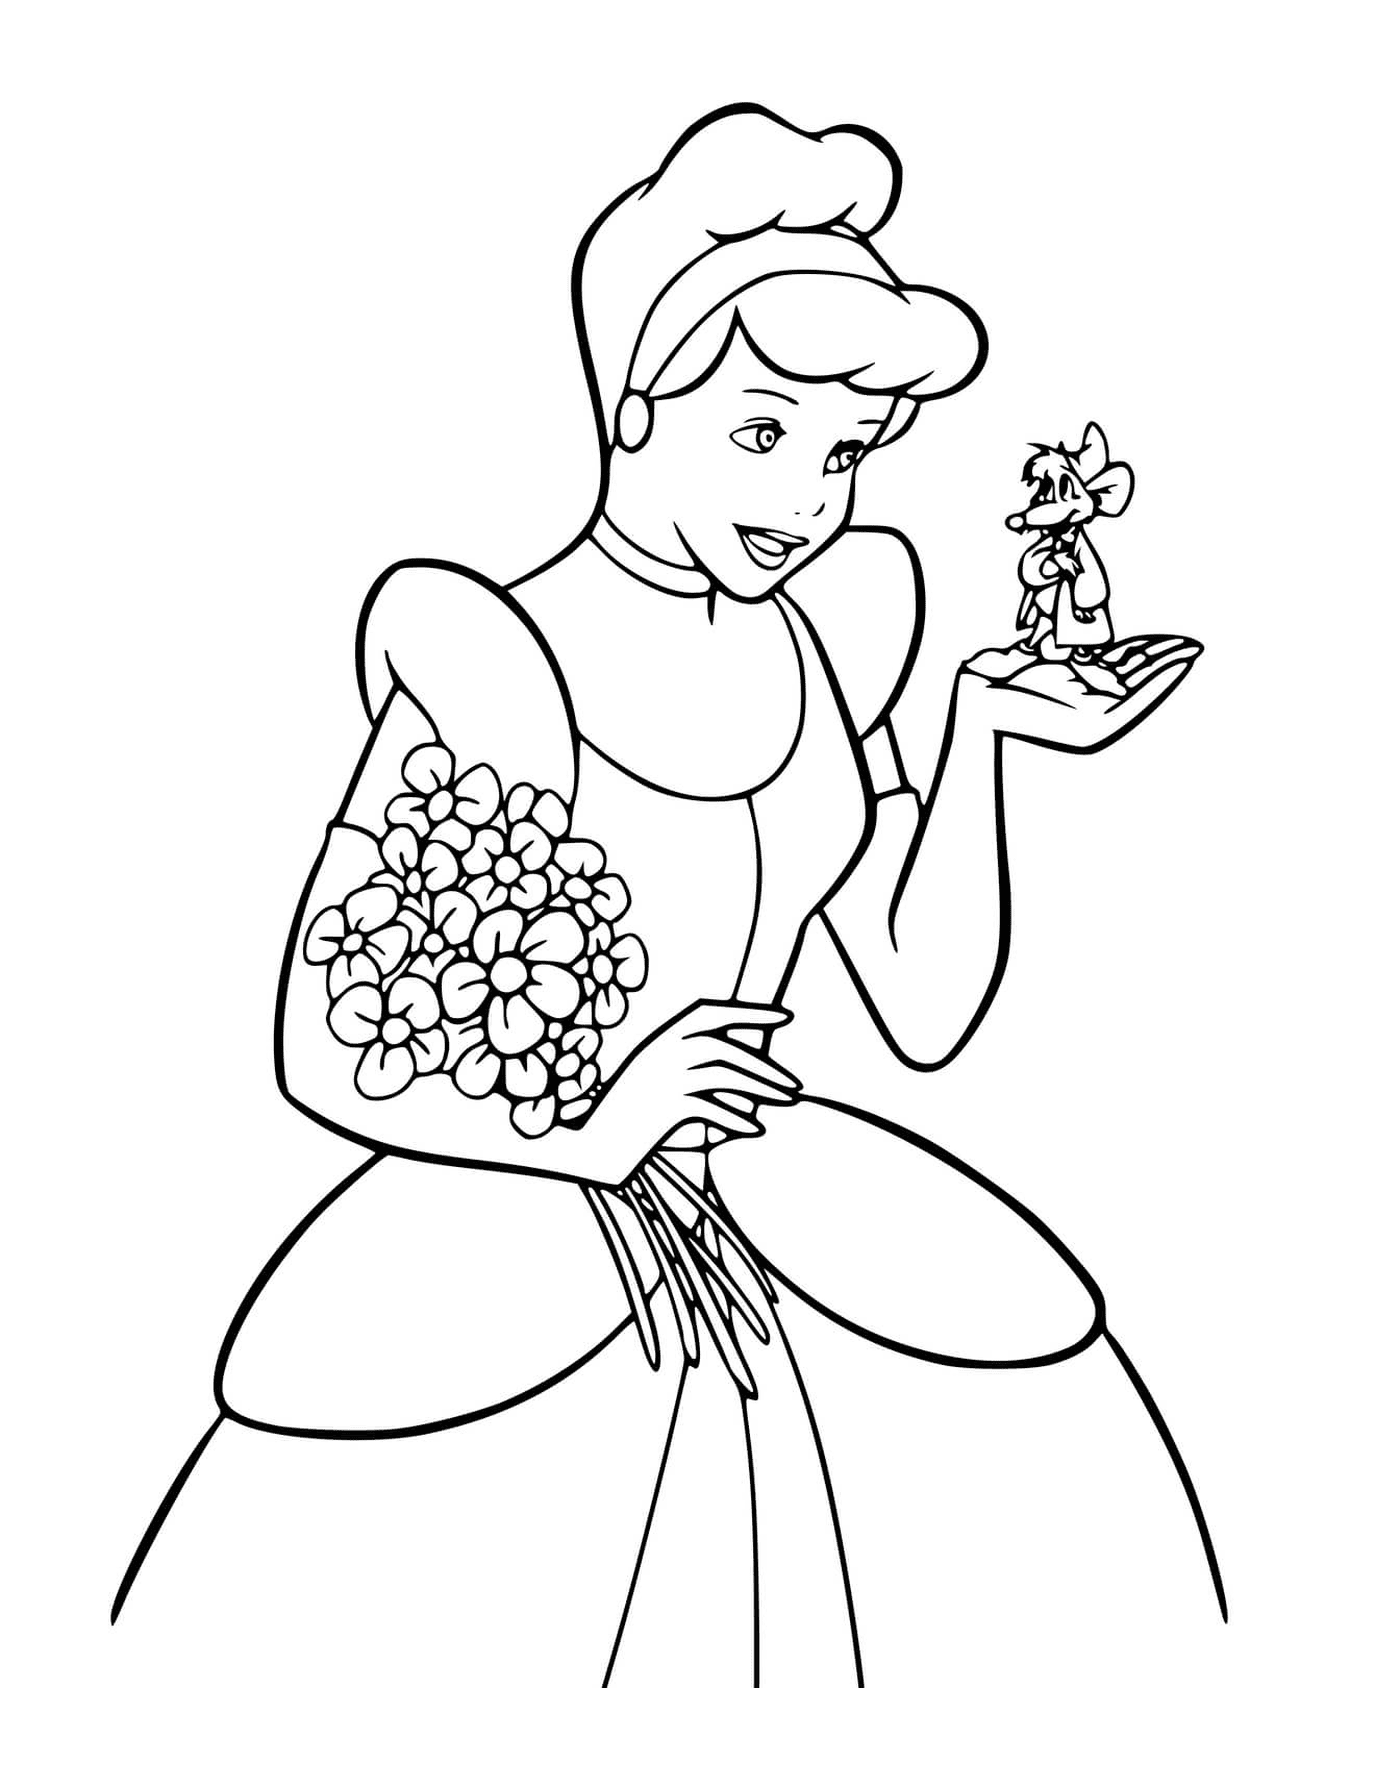  एक स्त्री फूल पहने हुए 